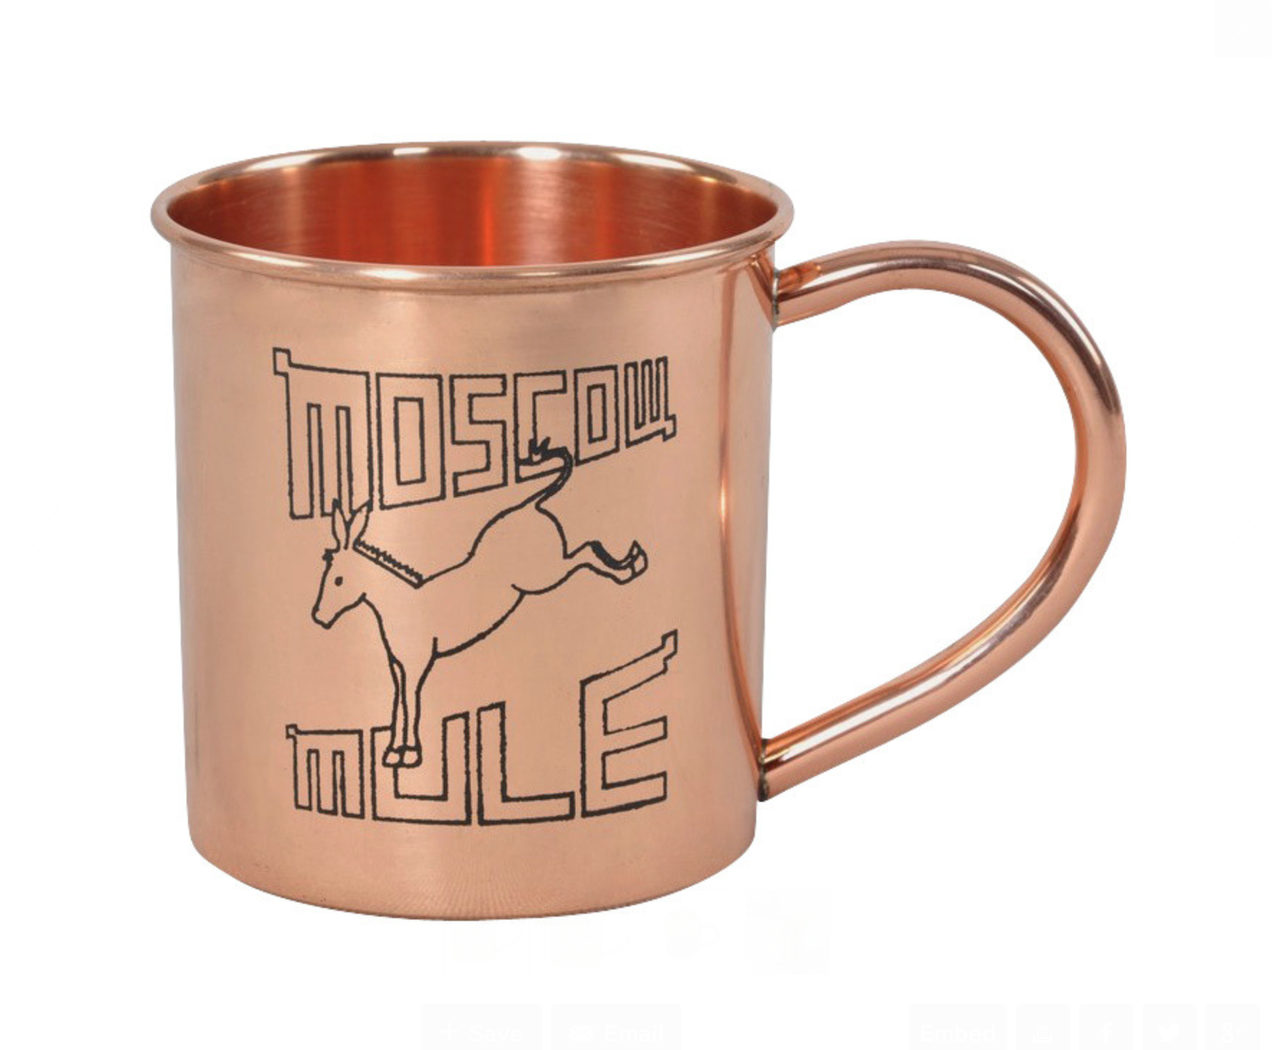 Moscow Mule Mug – Buckeye Vodka